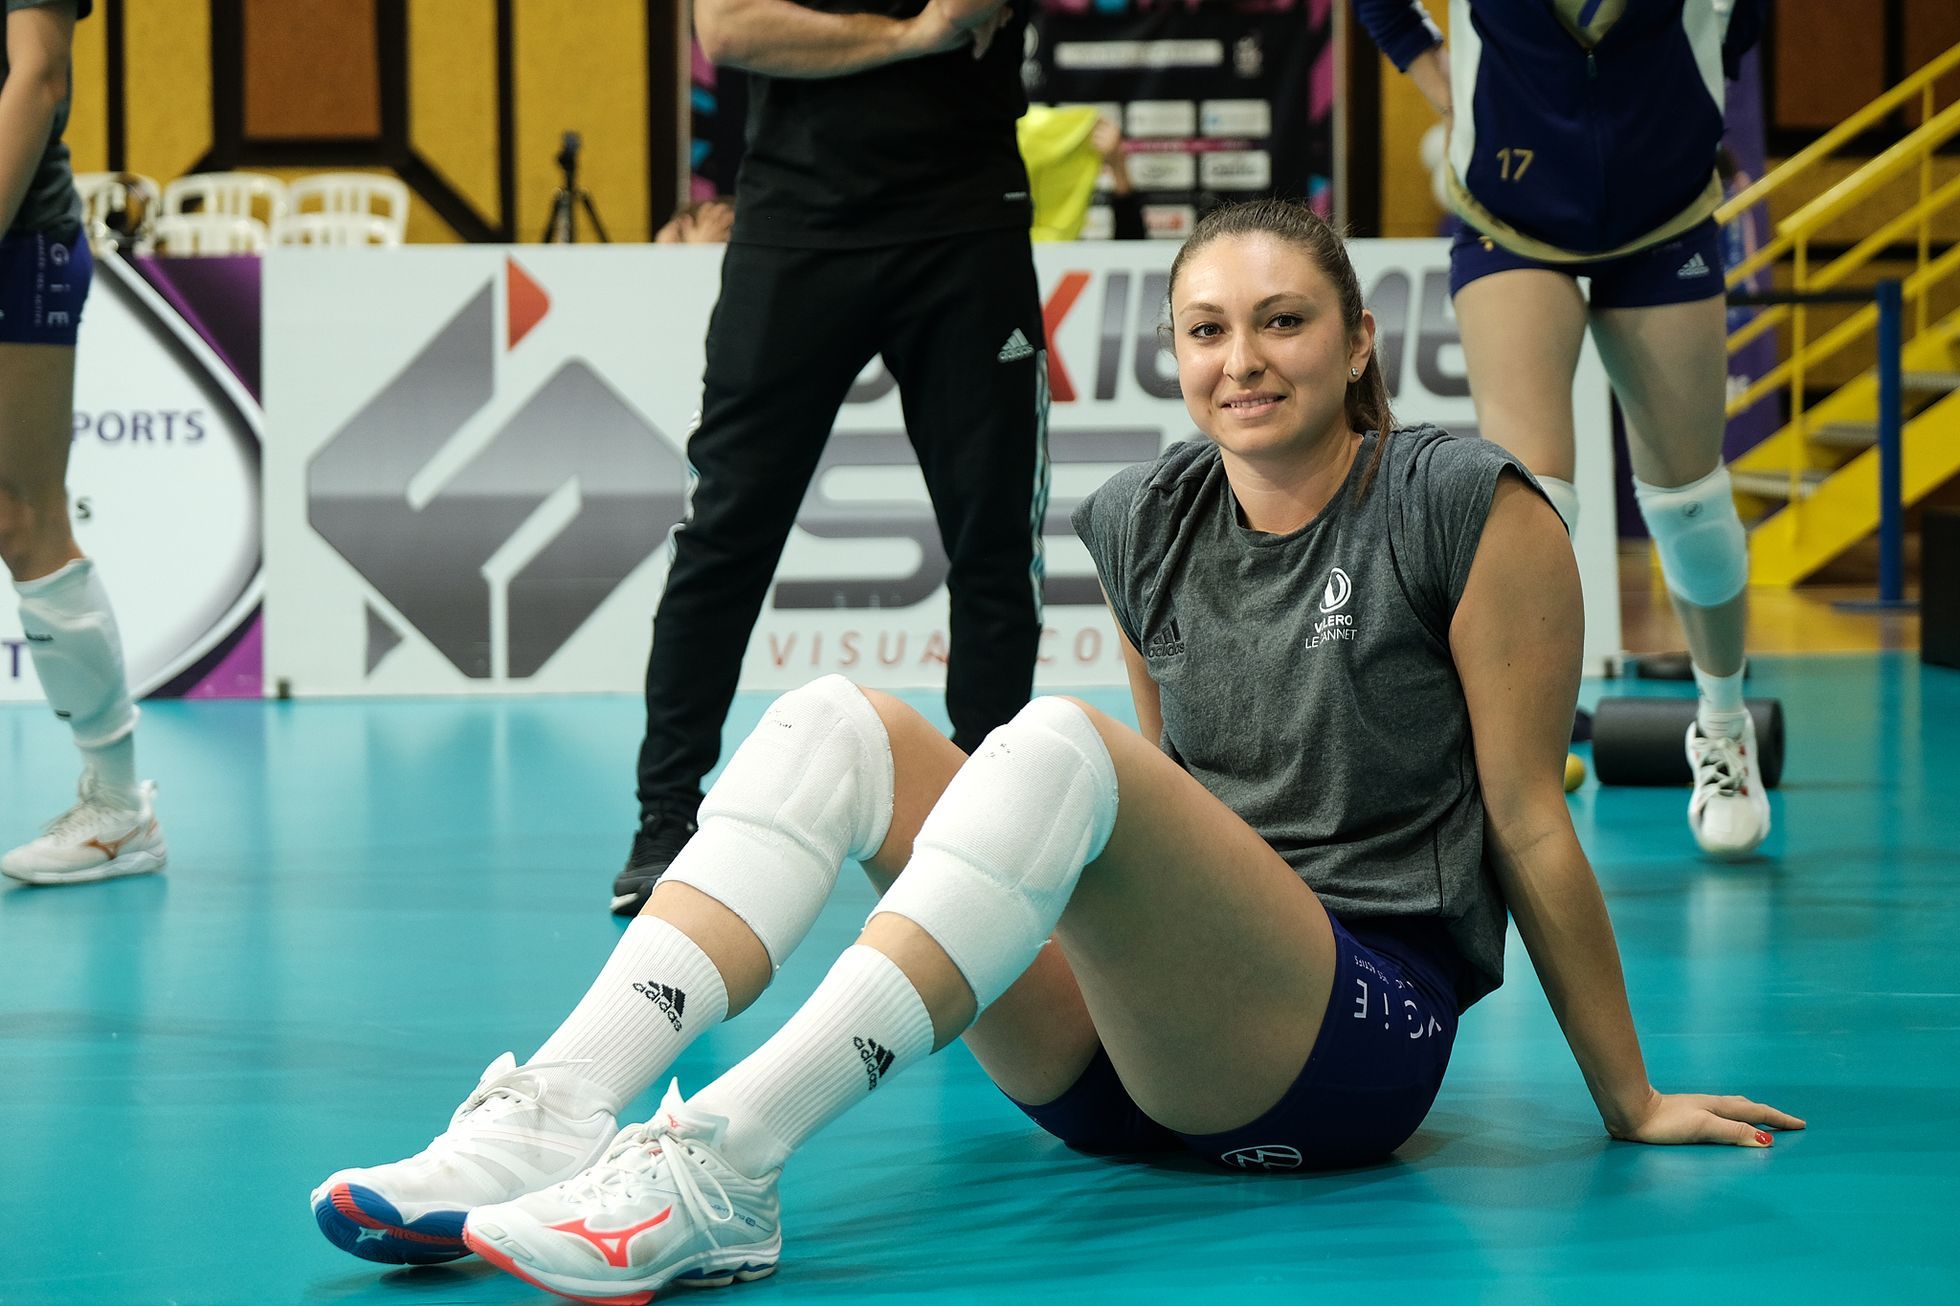 Après la victoire en France, Mlejnková est allé en Turquie, le rêve de l’Italie et des Jeux Olympiques